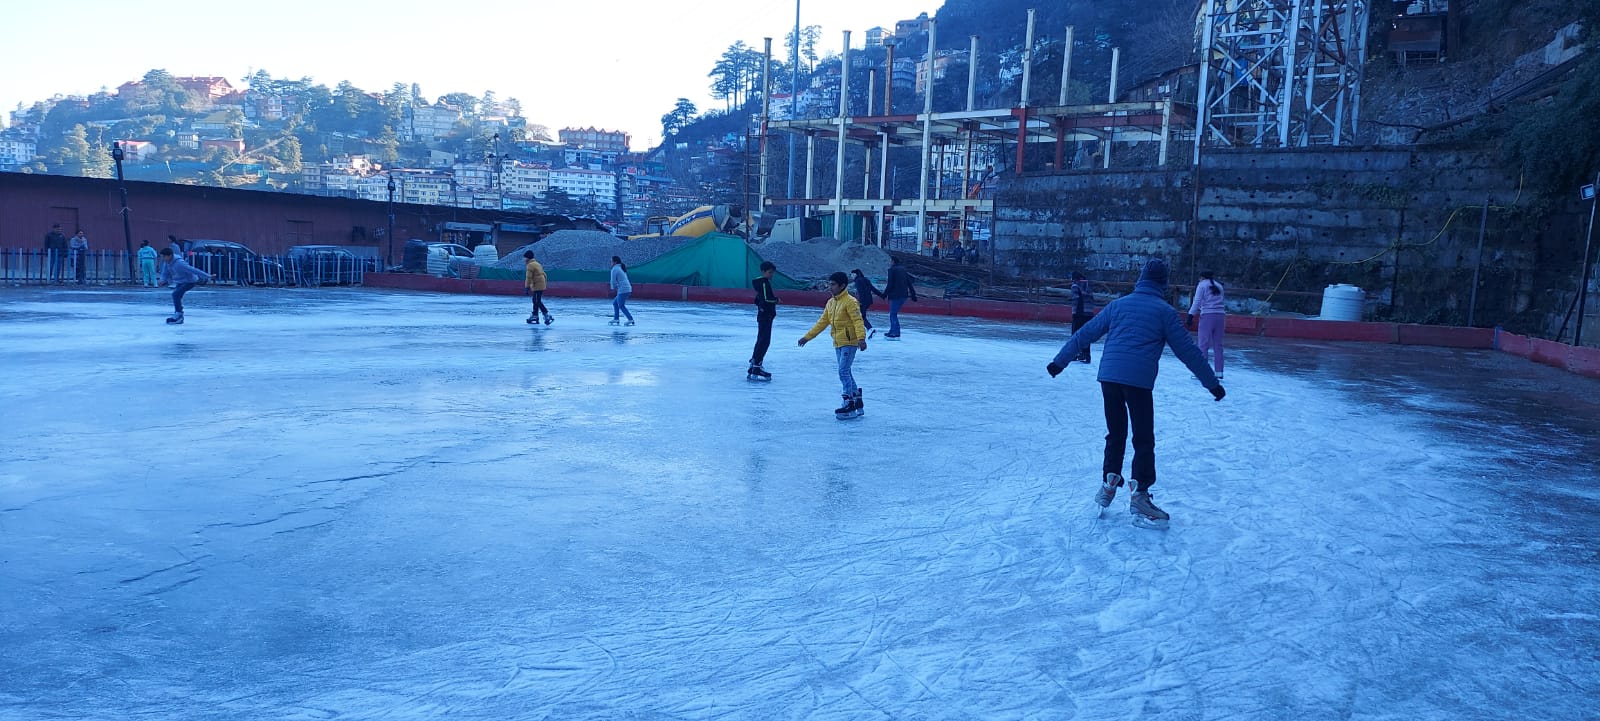 Ice skating adventure begins in Shimla